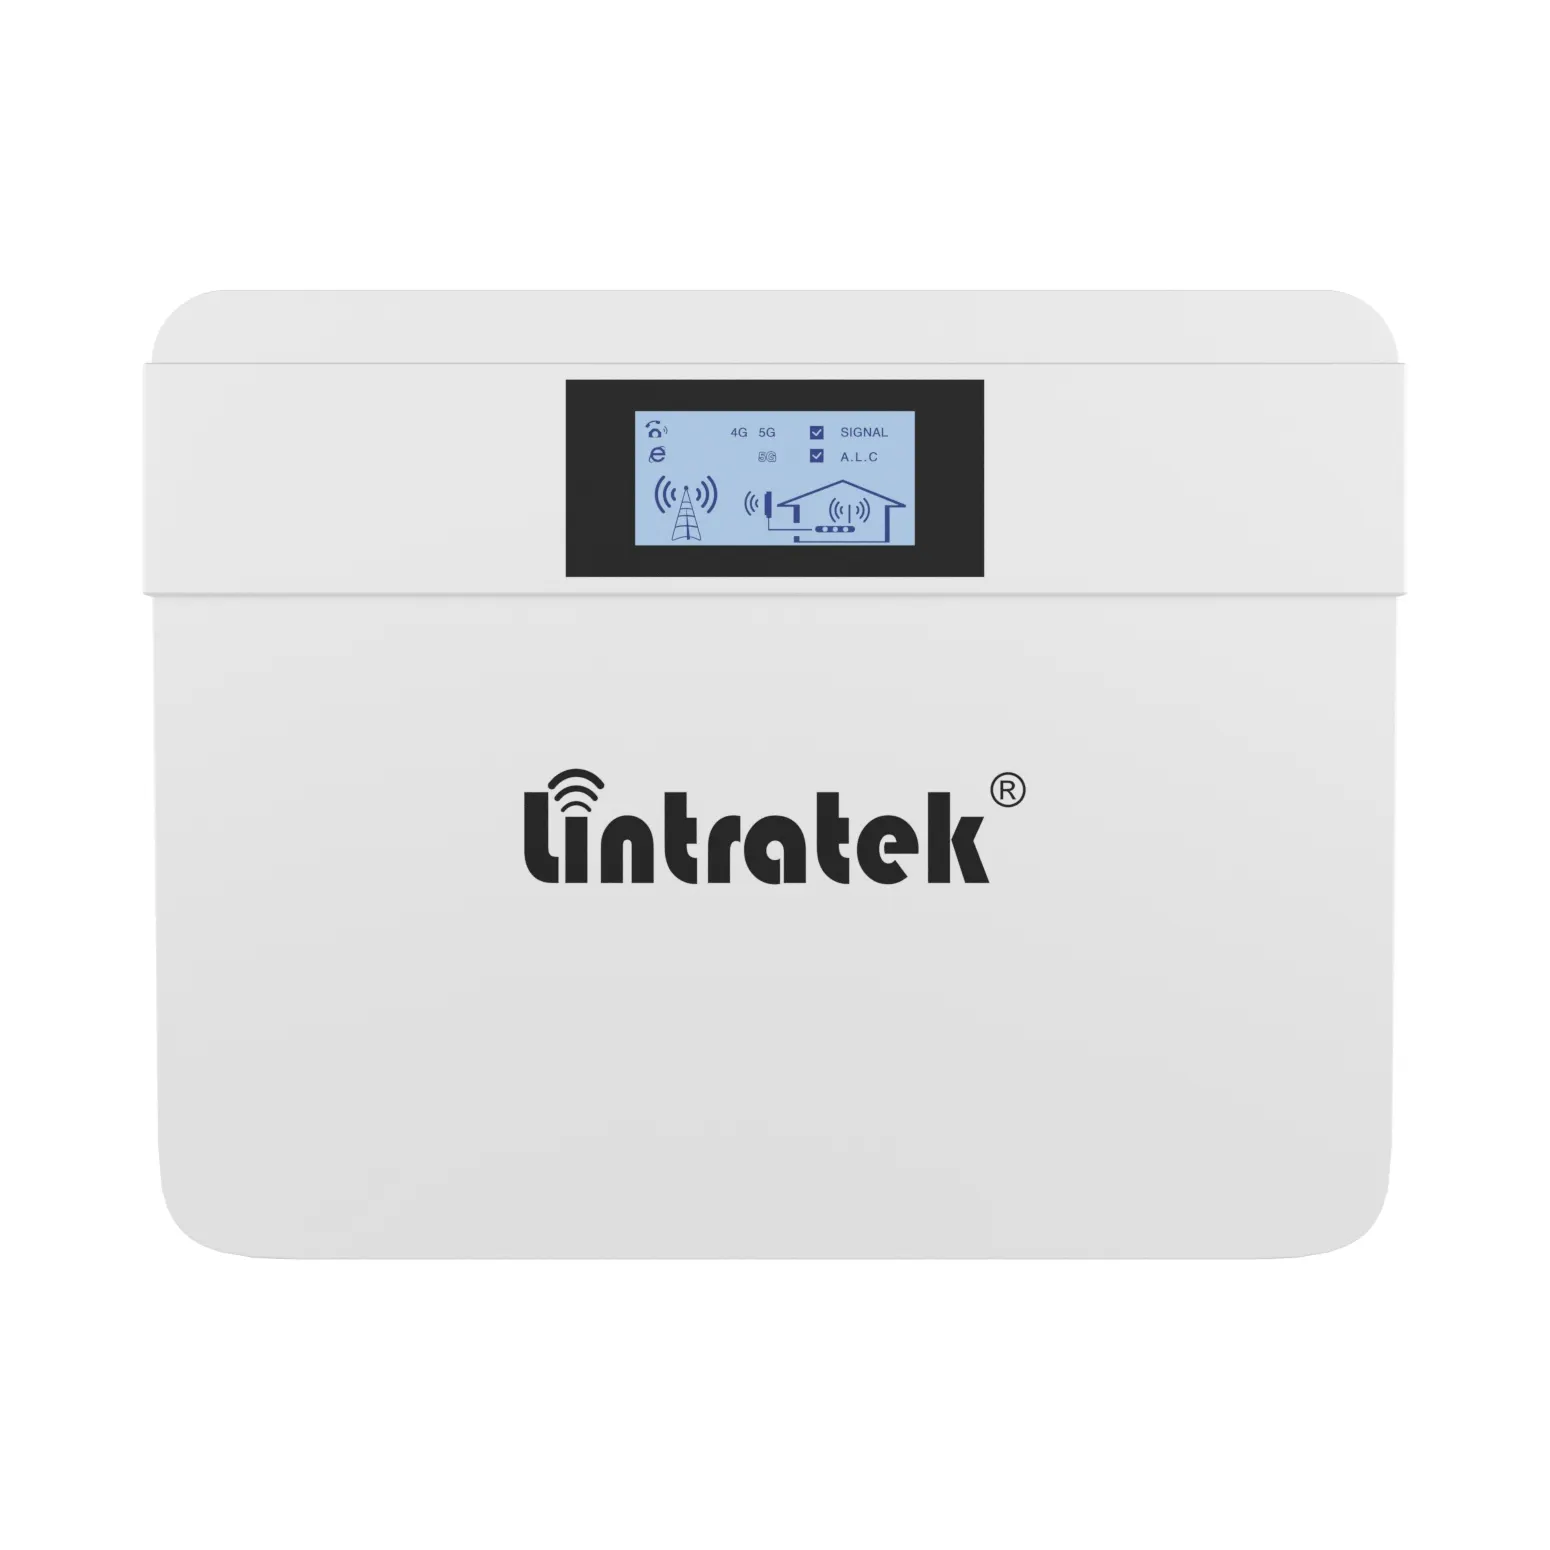 Lintratek-repetidor de señal de red para teléfono móvil, nuevo diseño de refuerzo, 4g, 5g, 1800, 3500 mhz